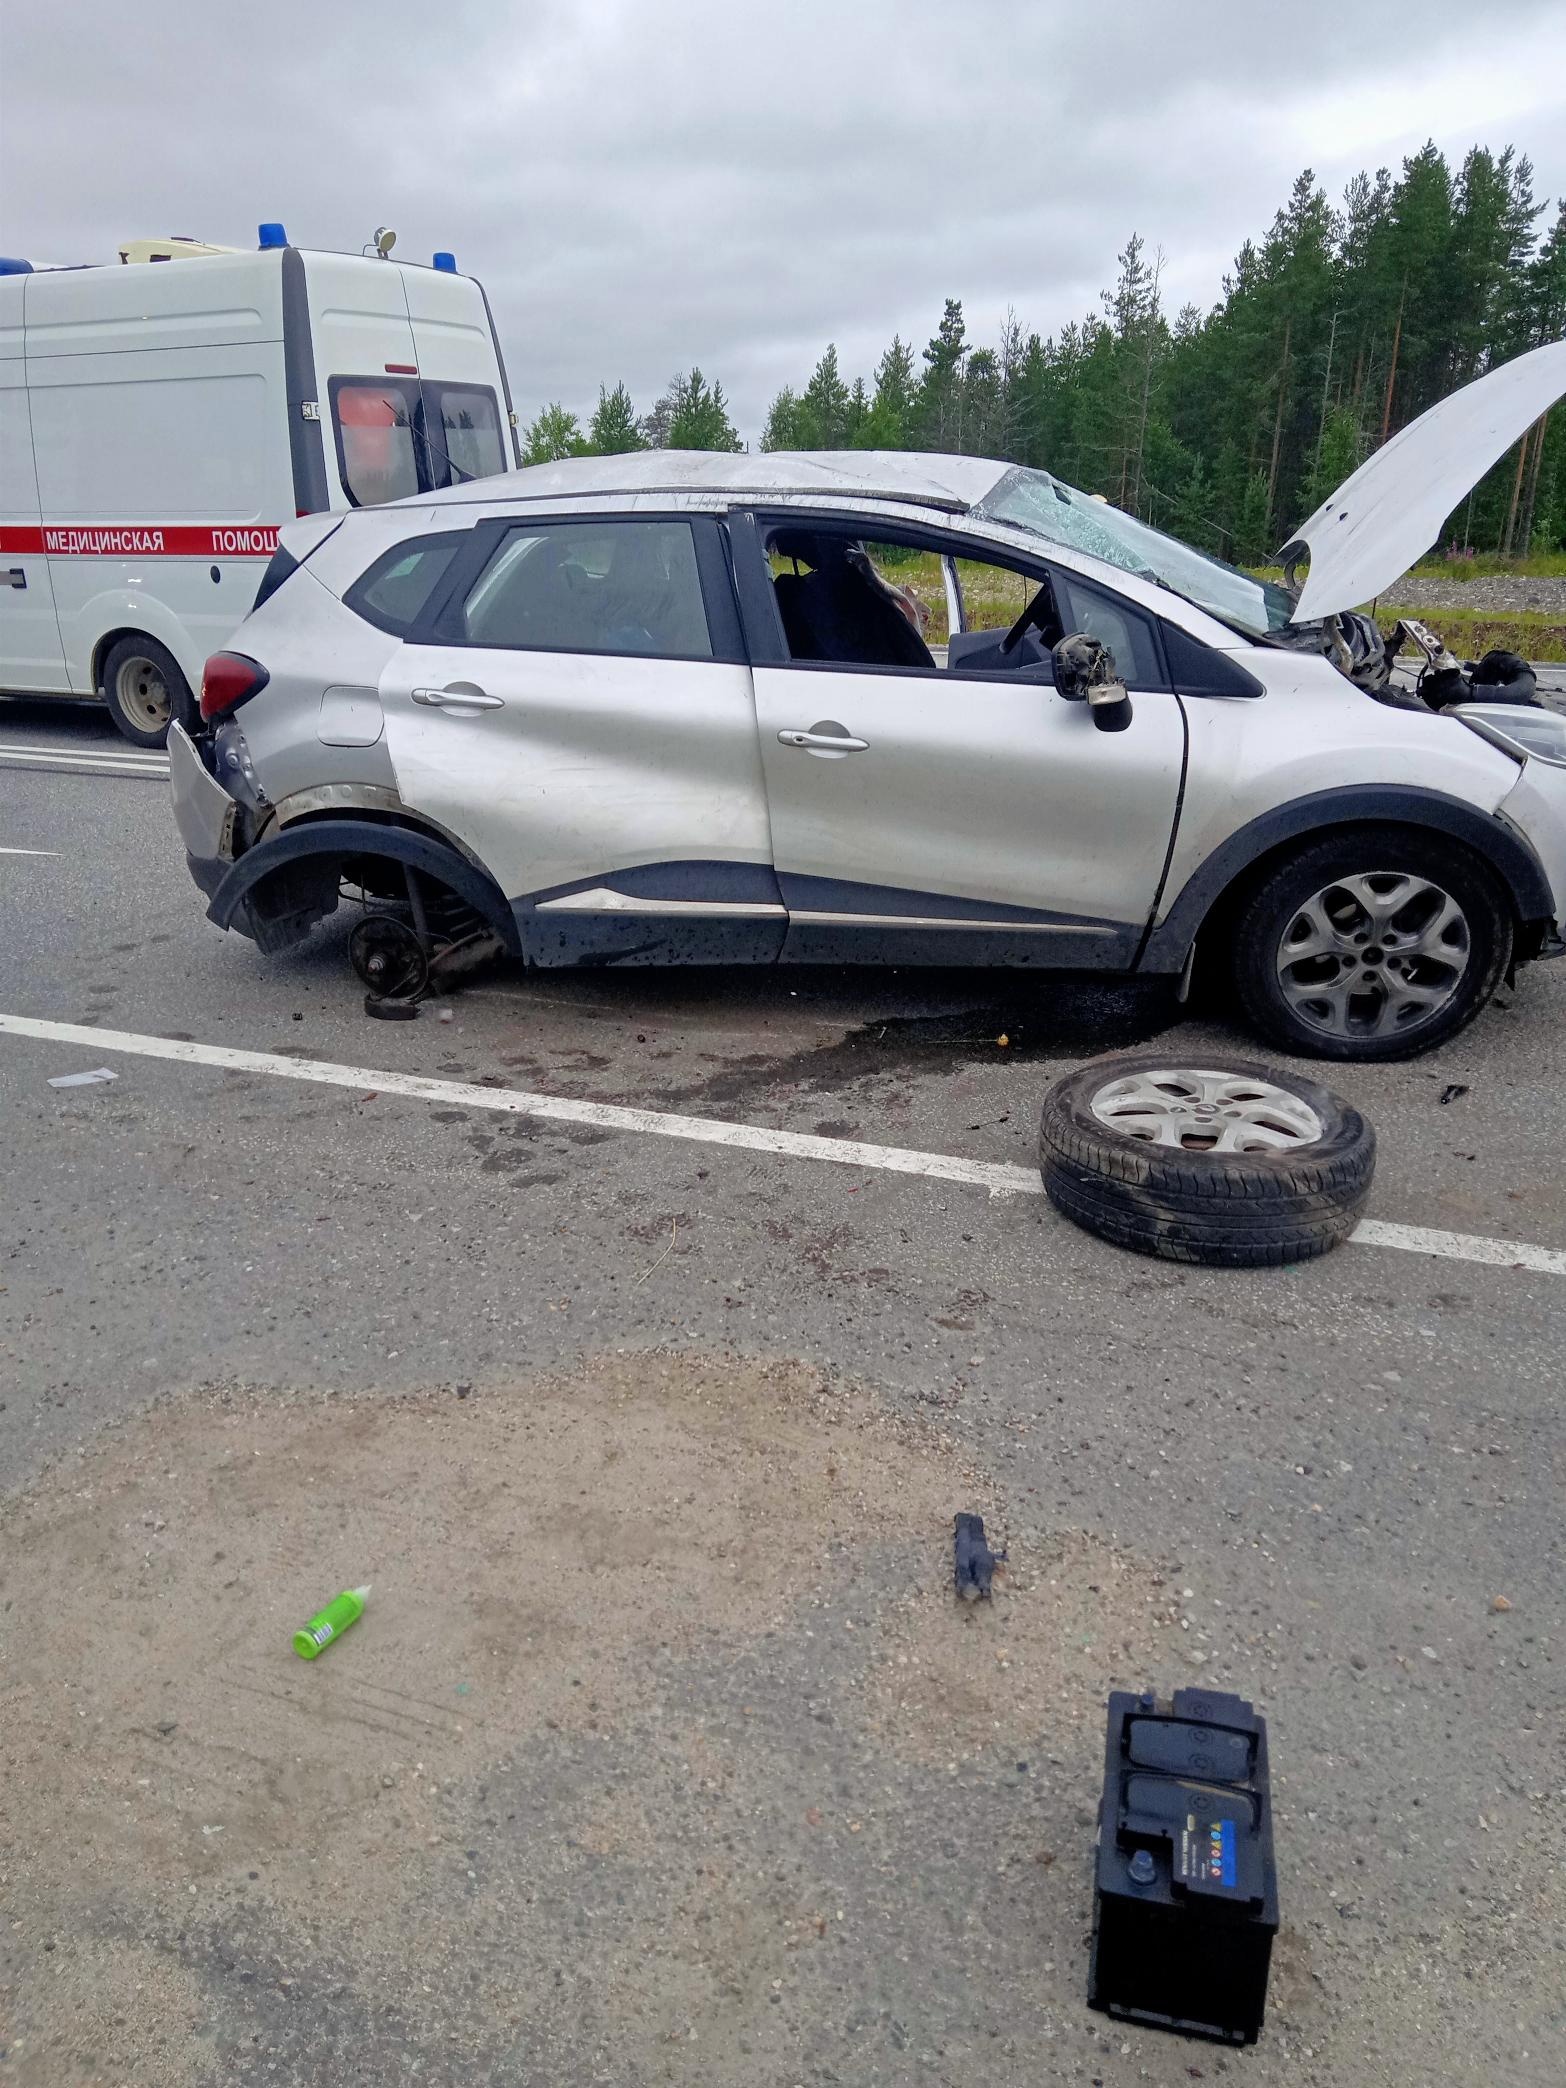 Водитель из Москвы умер в реанимации от травм после столкновения автомобилей на трассе в Карелии